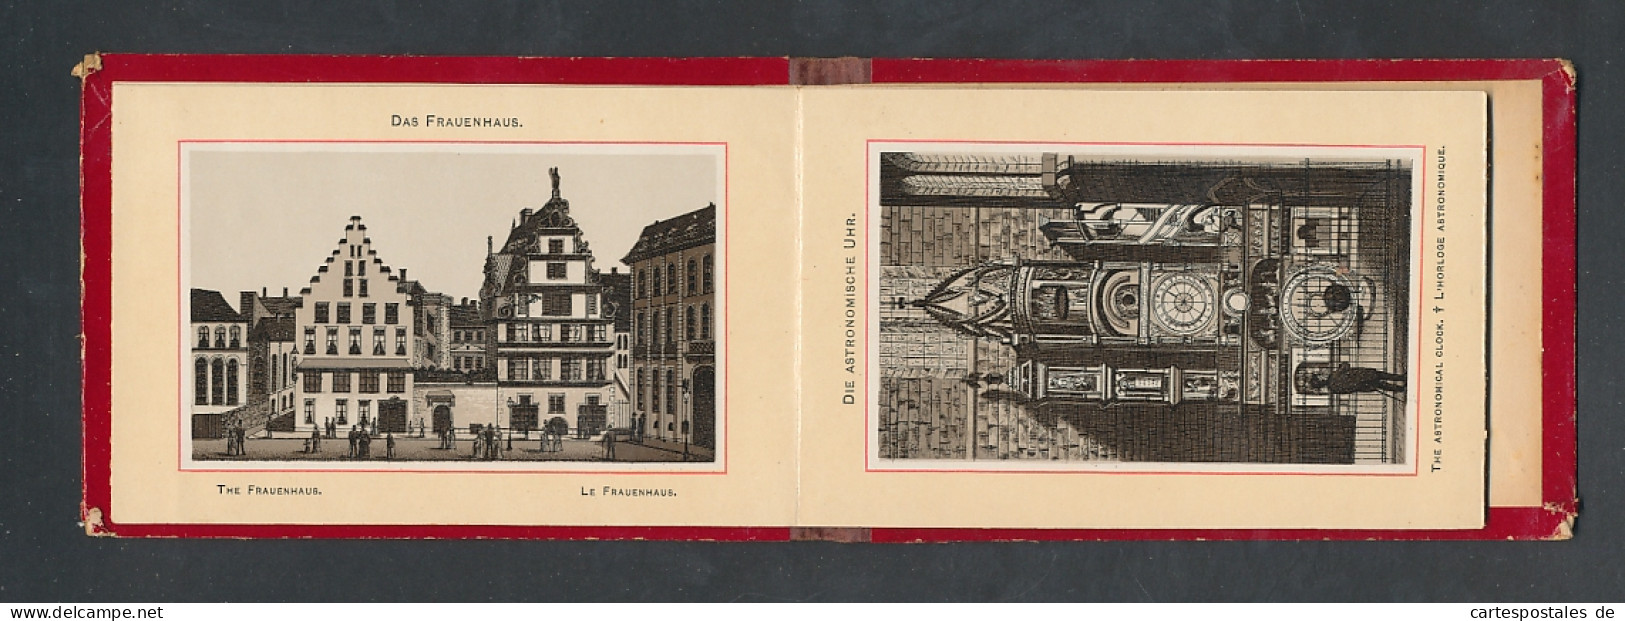 Leporello-Album Strassburg, Lithographien Von Münster, St. Thomas-Kirche, Frauenhaus, Etc.  - Litografía